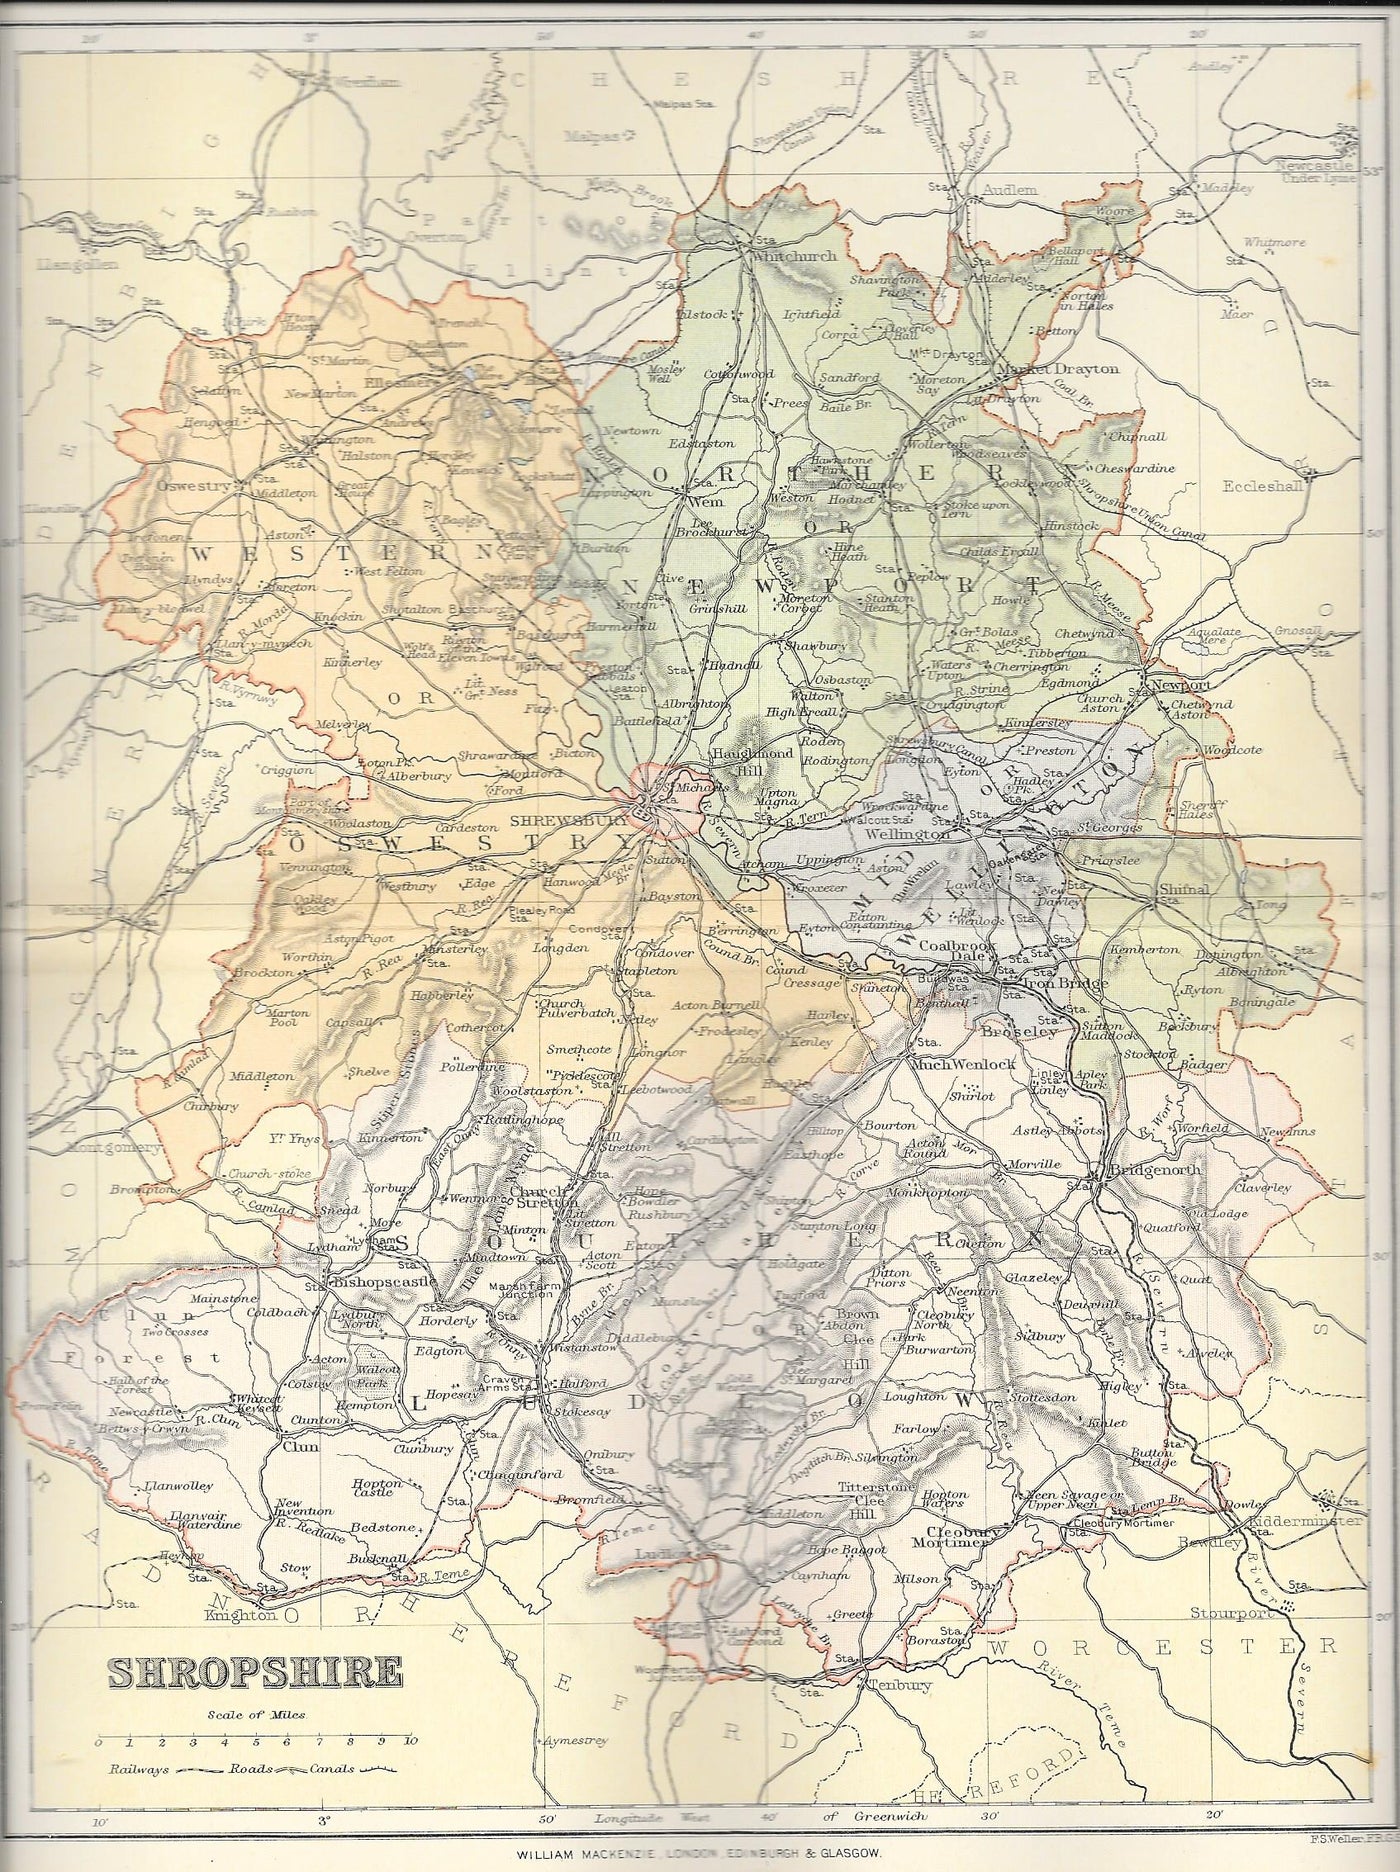 Shropshire (Salop) antique map